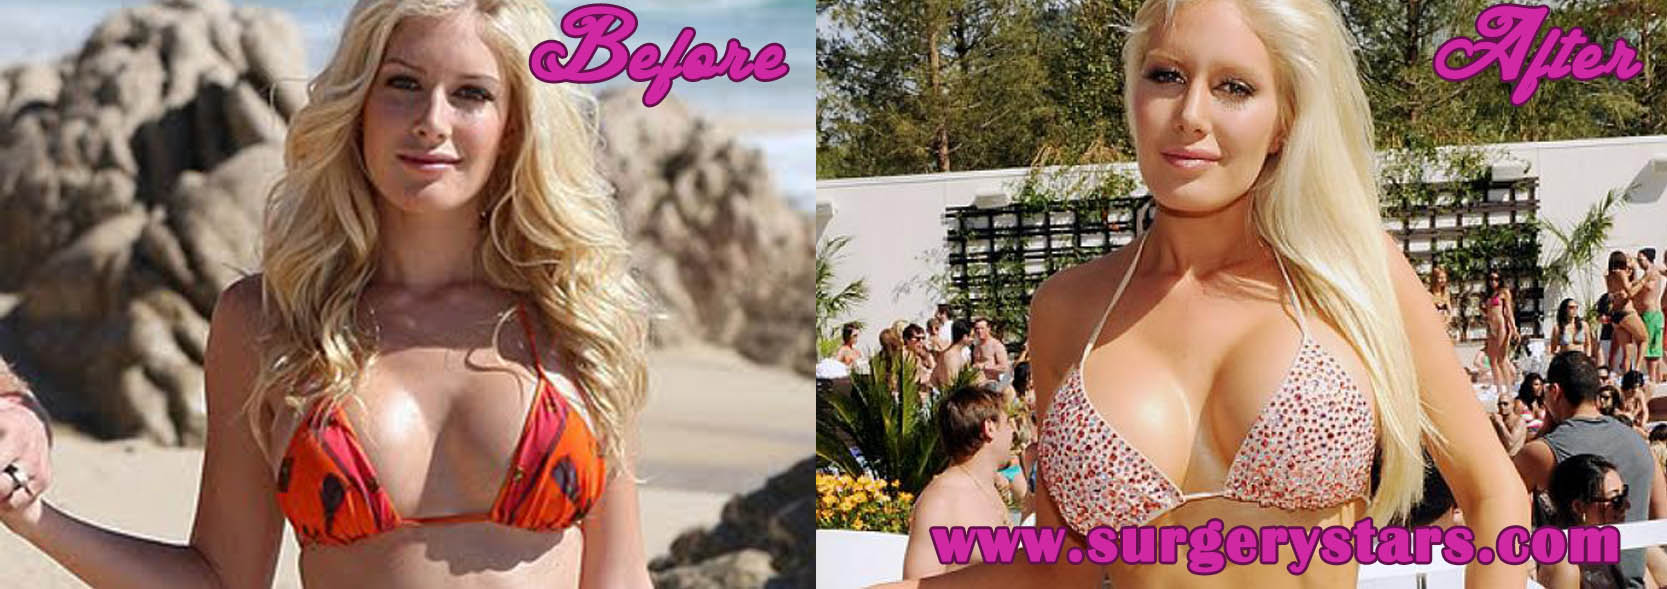 Heidi Montag Beautiful Boobs And Legs In Bikini